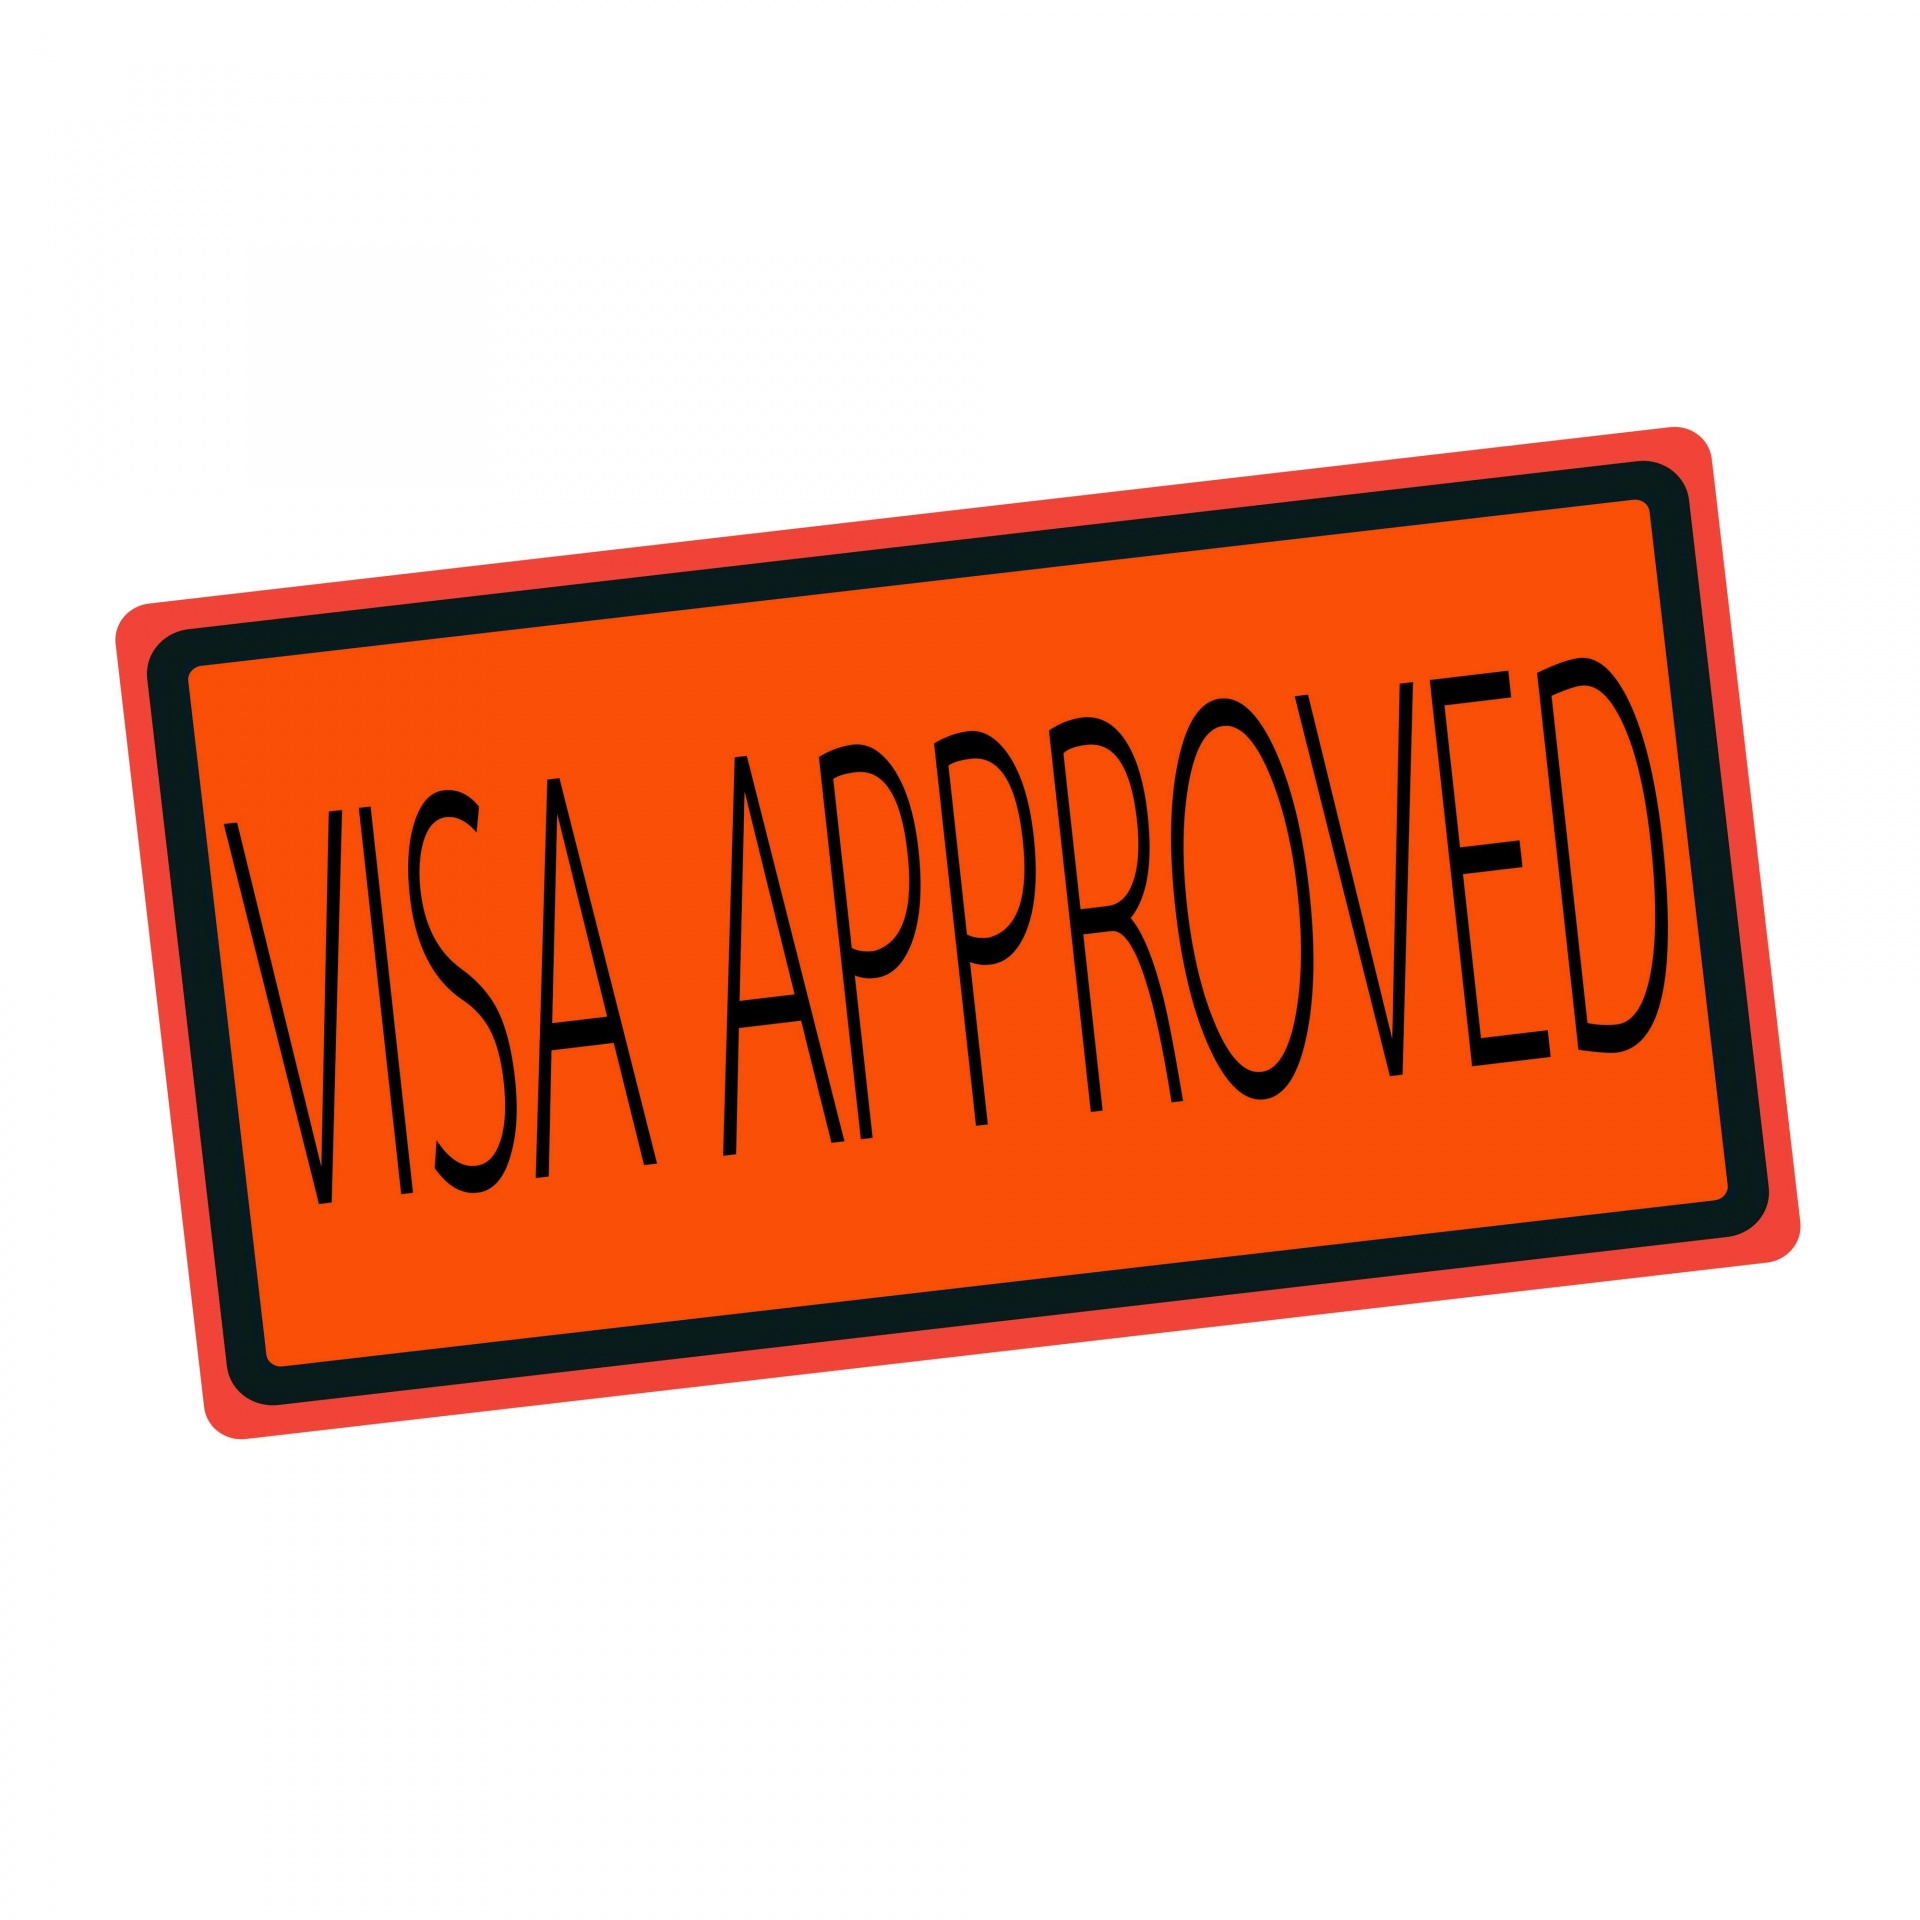 Texto de sello negro aprobado por Visa e